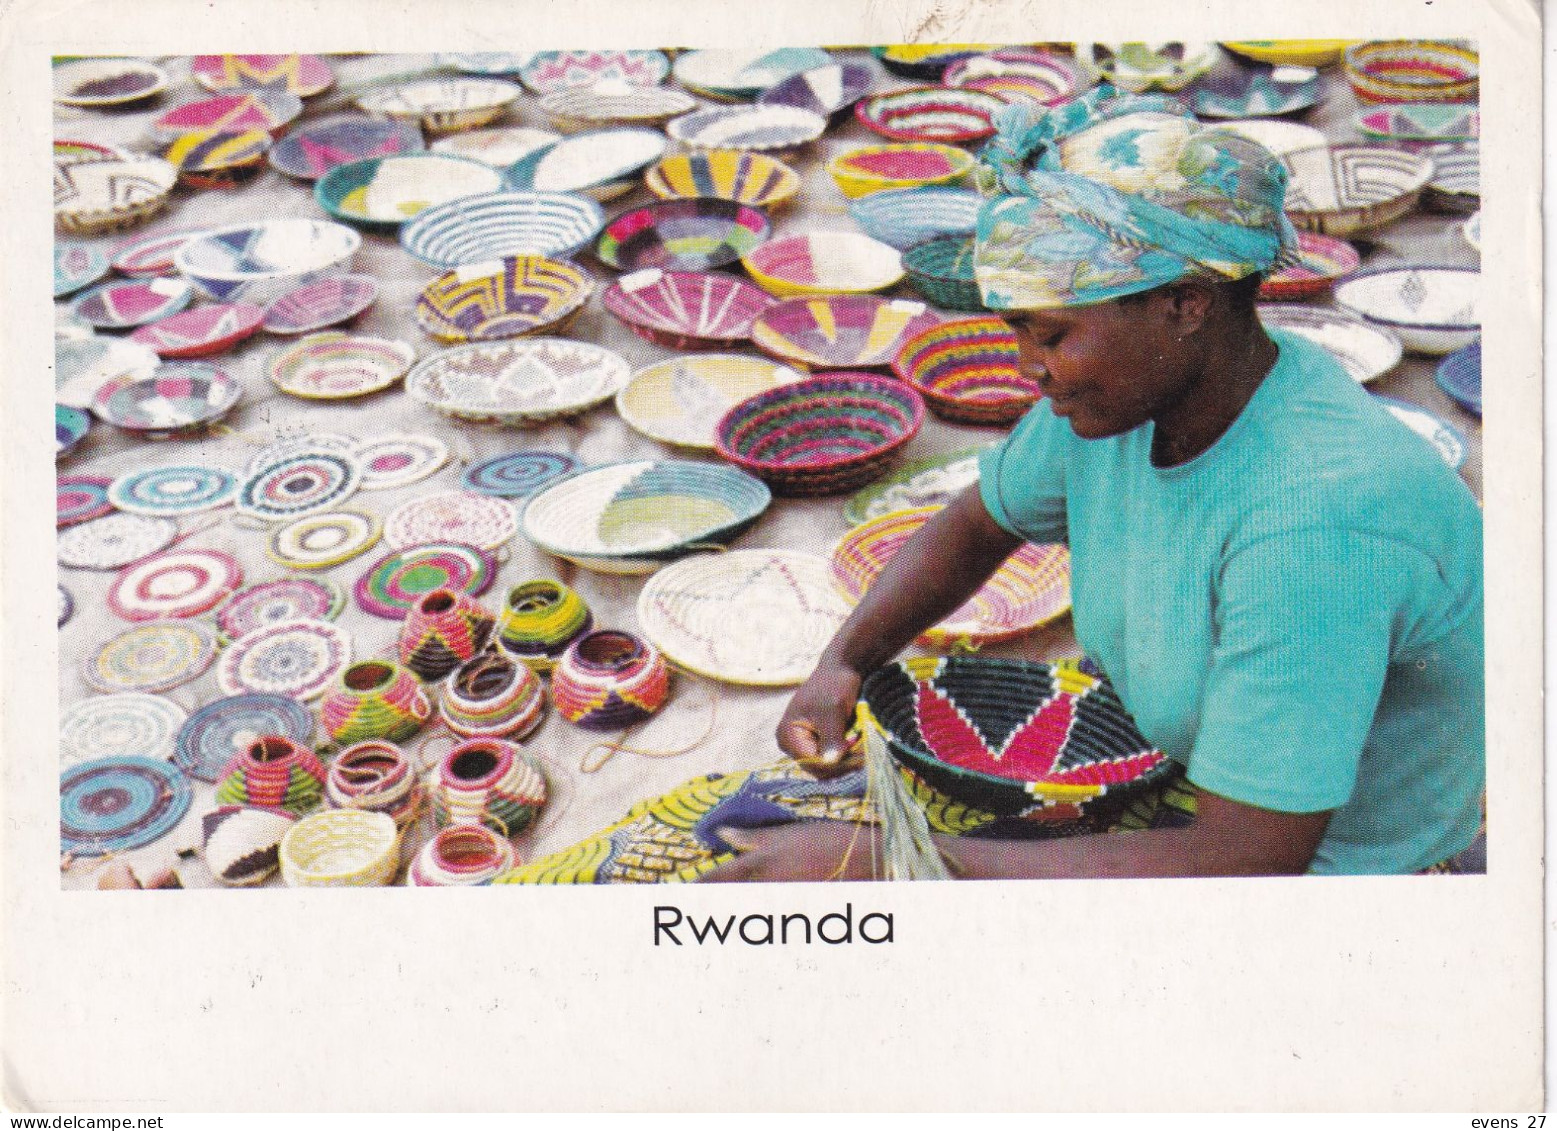 RWANDA-RED ROCKS-USED POSTCARD --RWANDA POSTMARK- - Rwanda